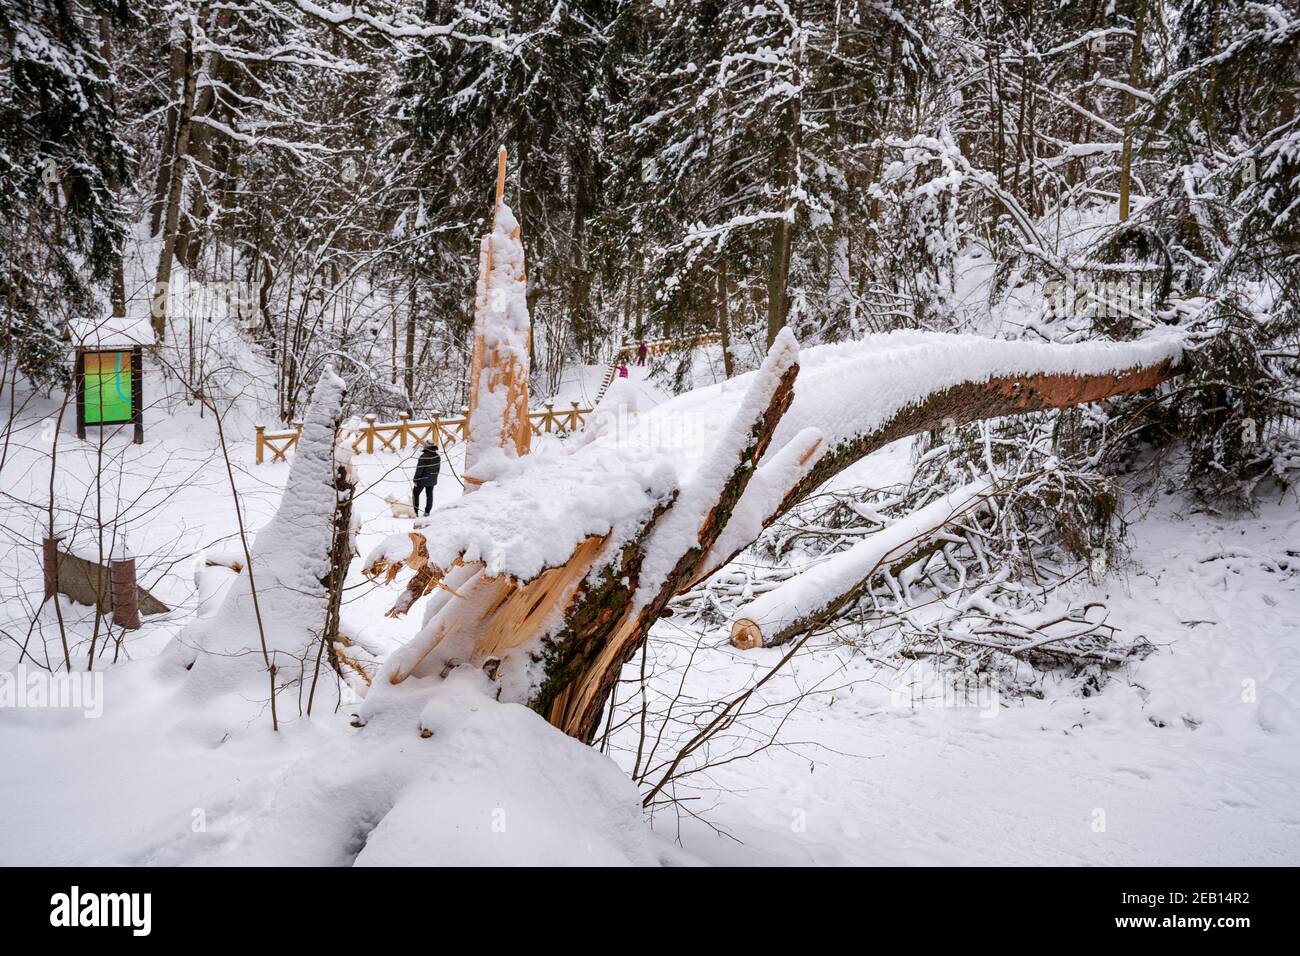 Säkulare alte riesige Kiefer Stamm von dem Schnee bedeckt Gefallen auf dem Weg nach starkem Schneefall in einem Park Oder Wald im Winter Stockfoto